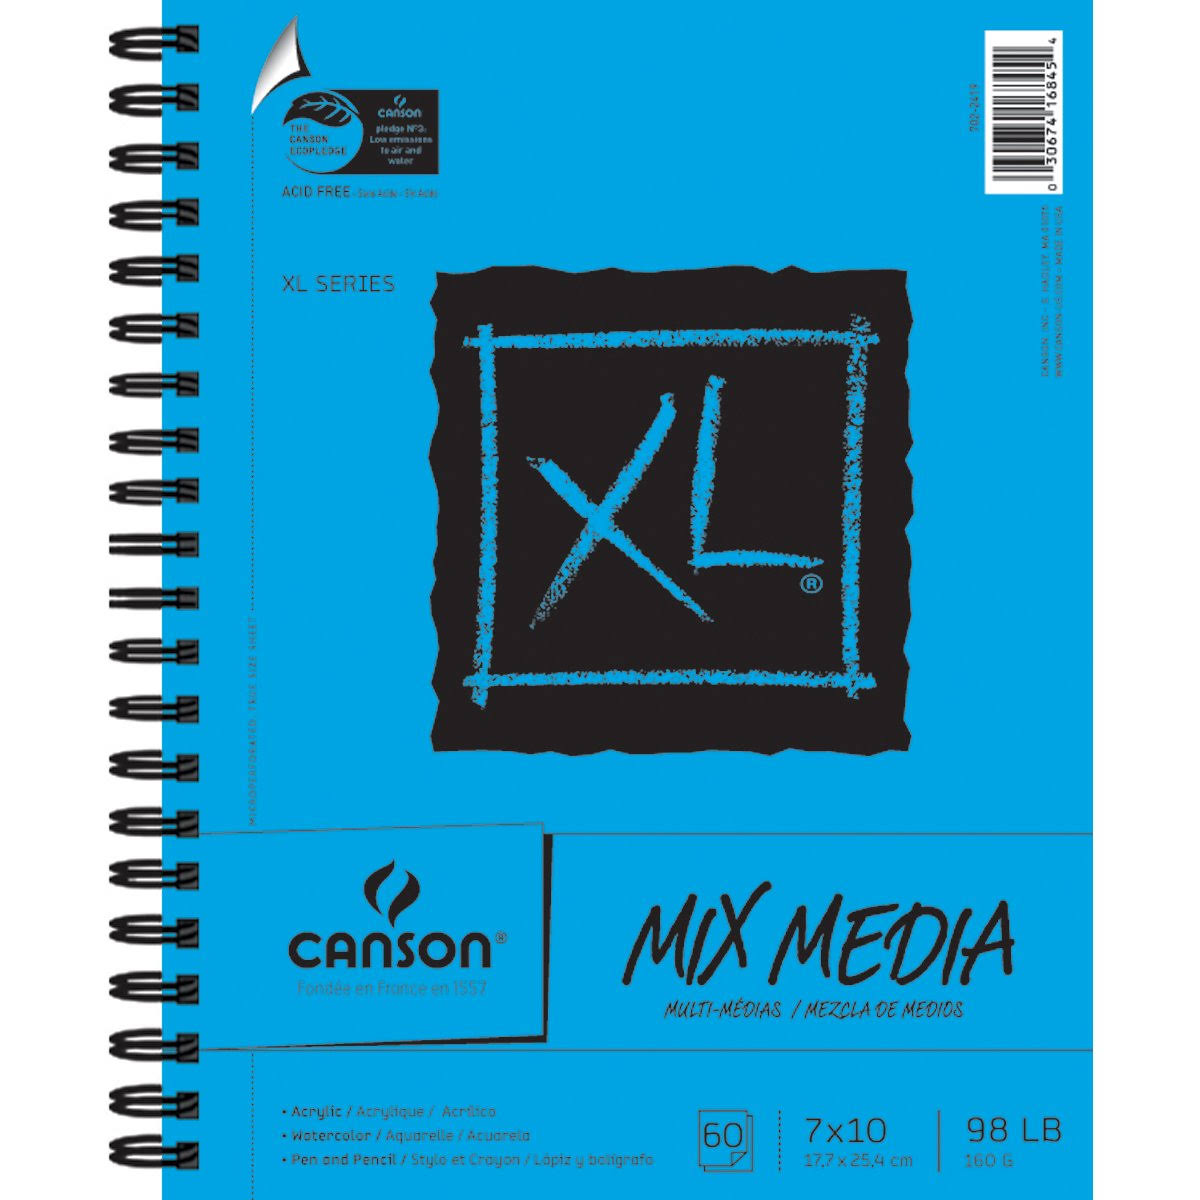 Canson Mix Media Sheet Pad - 60 sheets, 7" x 10"